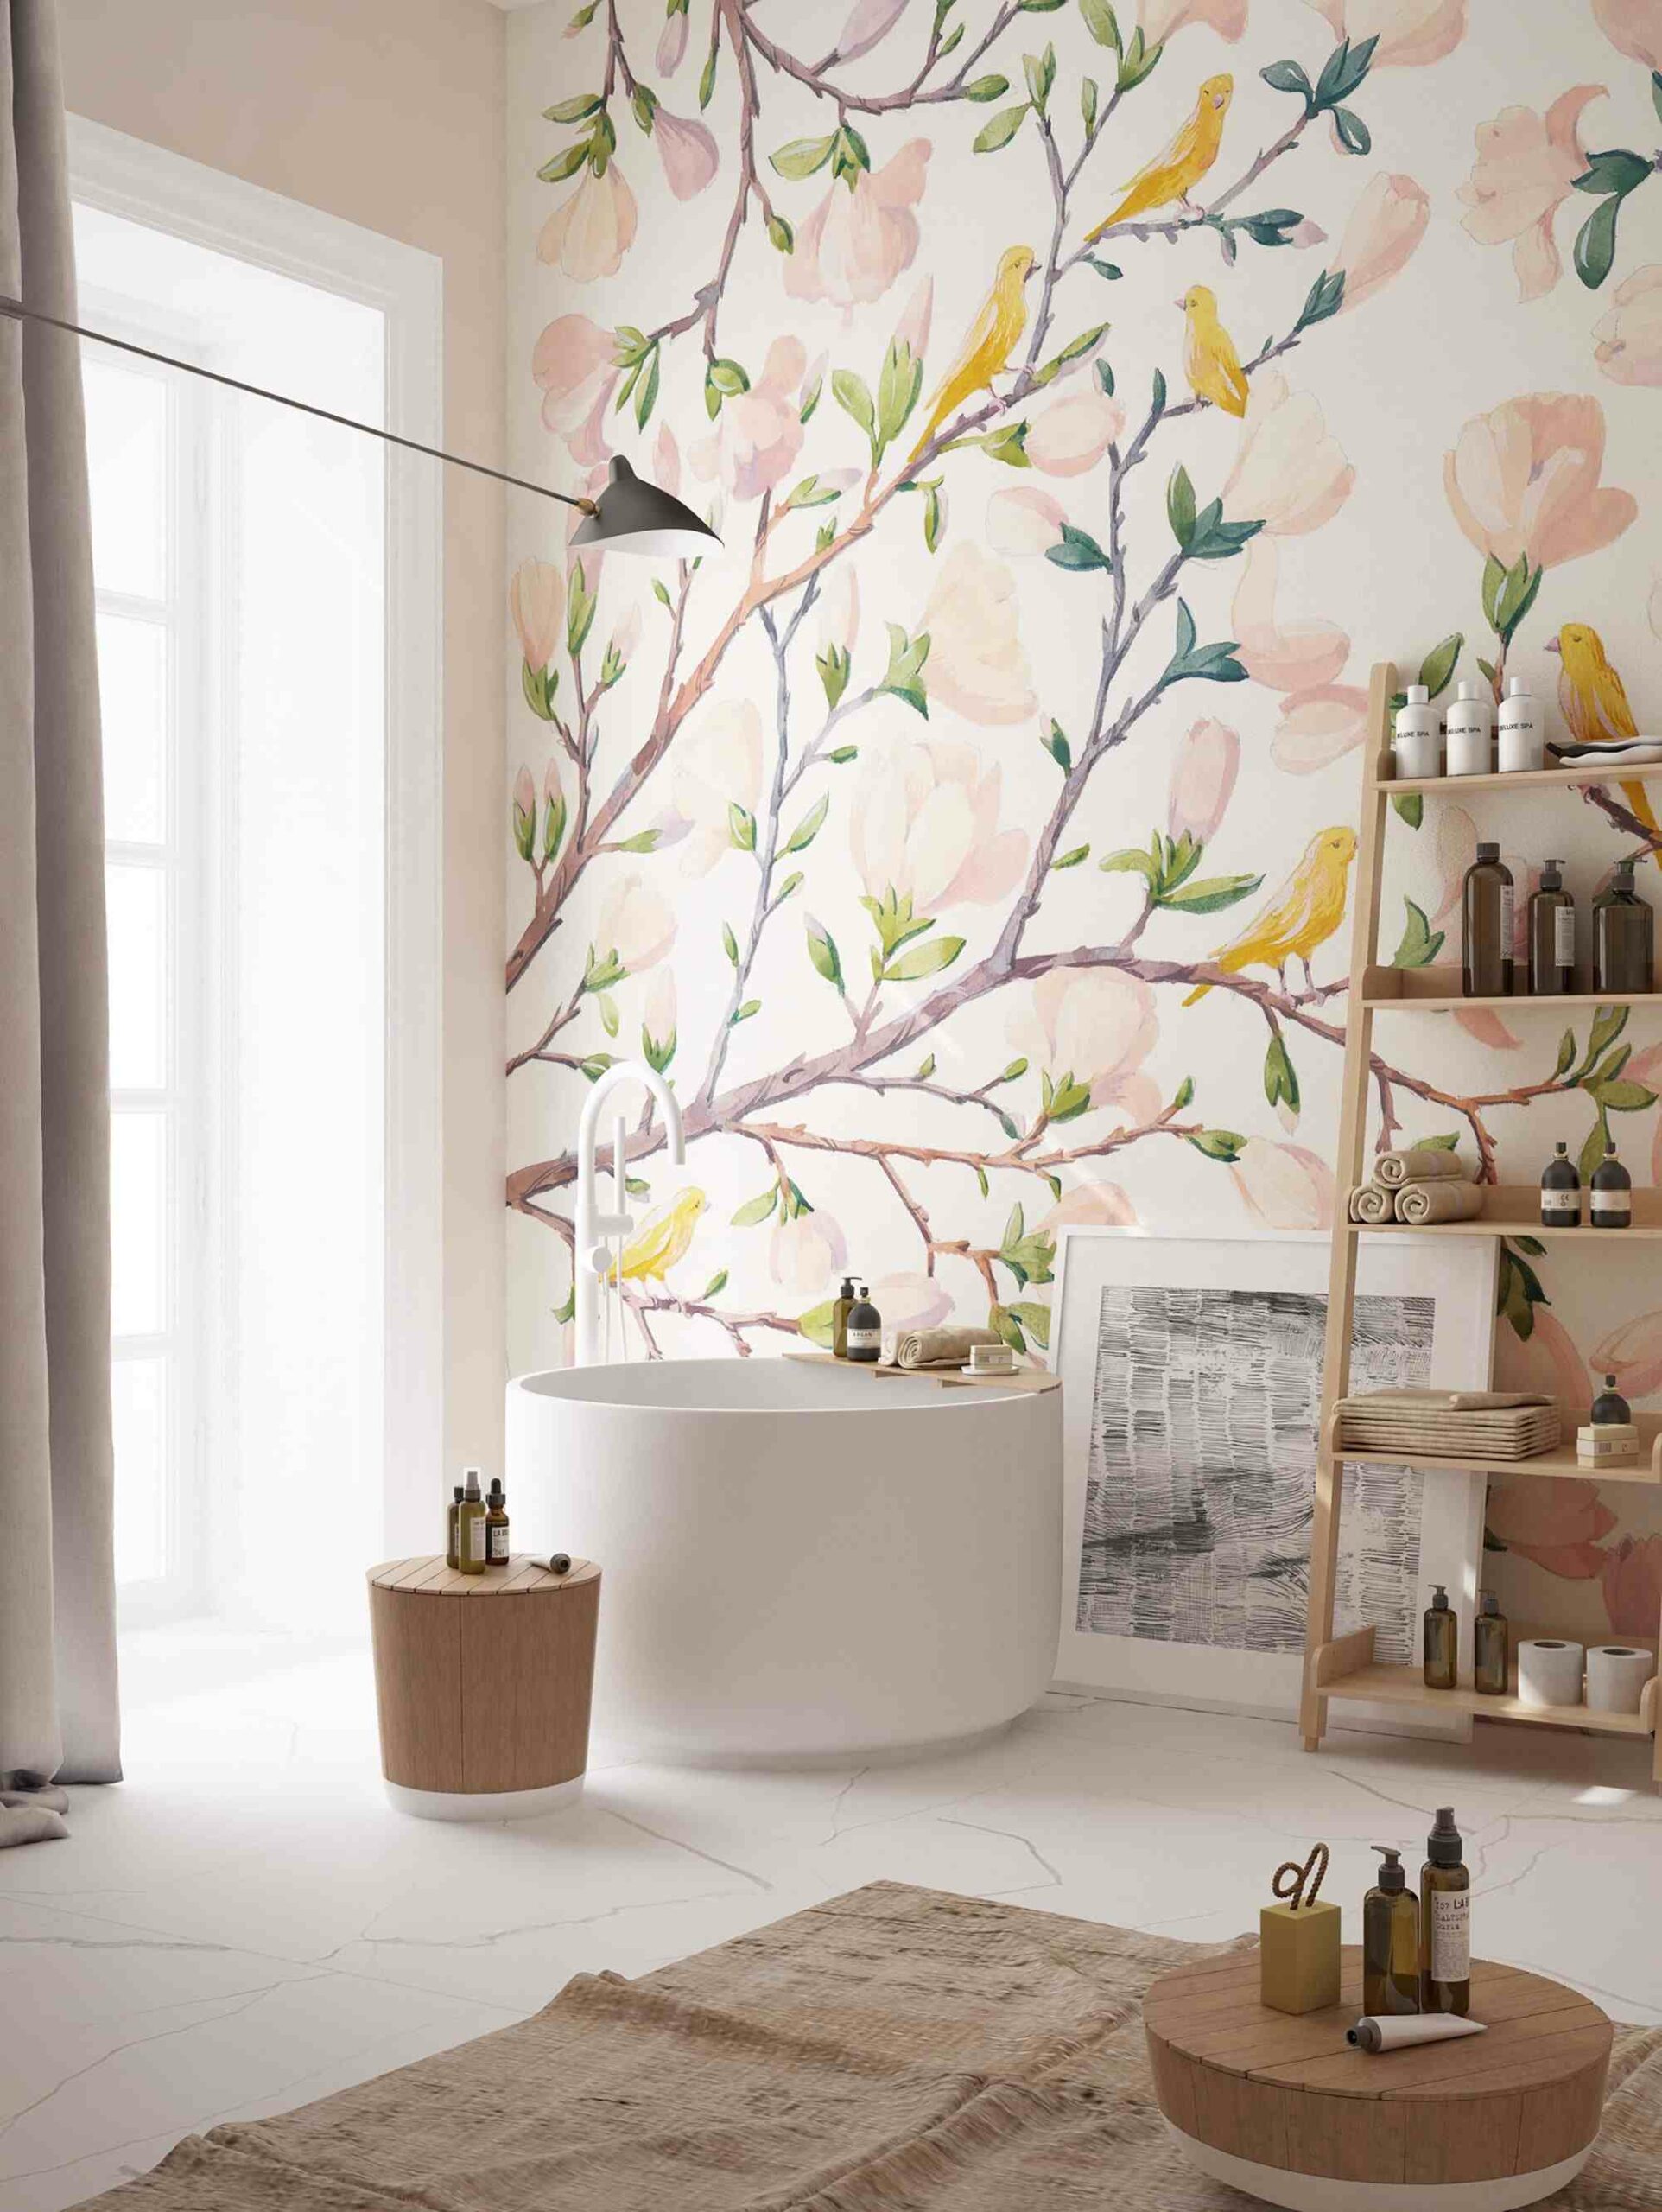 white bathtub, table, shelf, pretty fl، wallpaper, rug and a painting